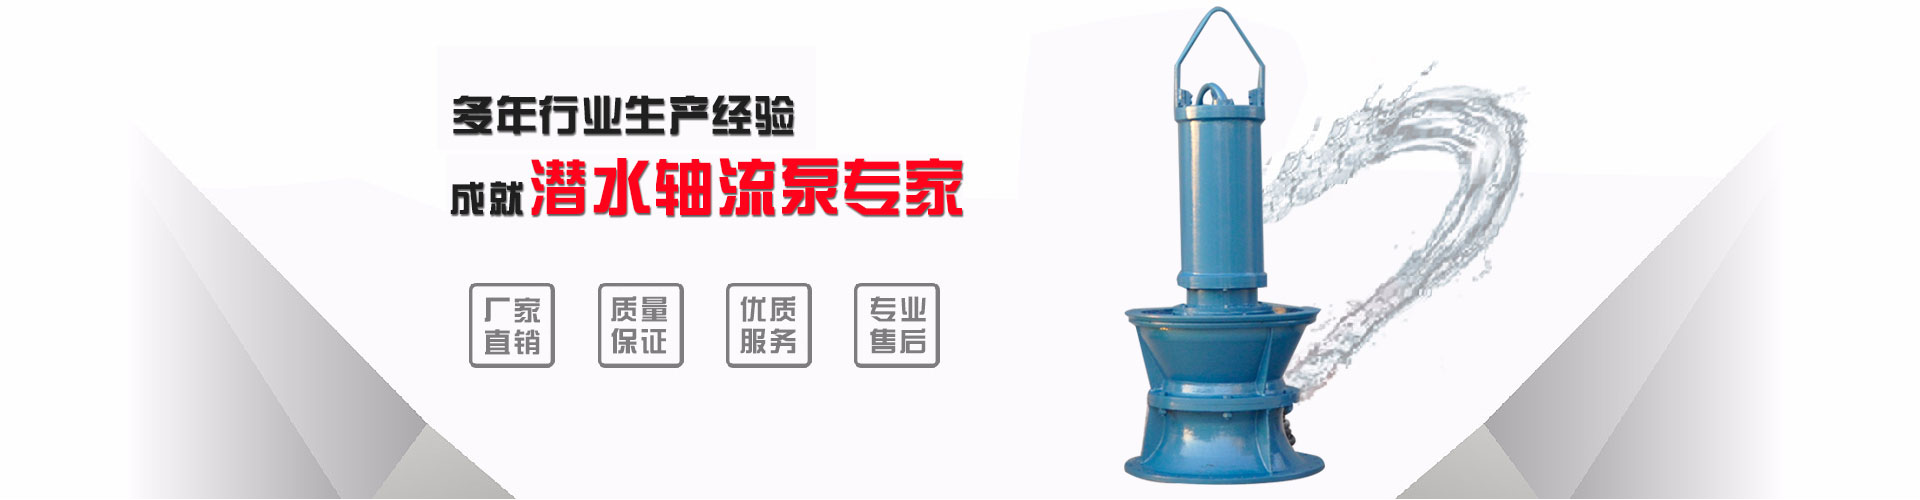 长沙耐磨浮筒泵厂_荆州浮筒泵